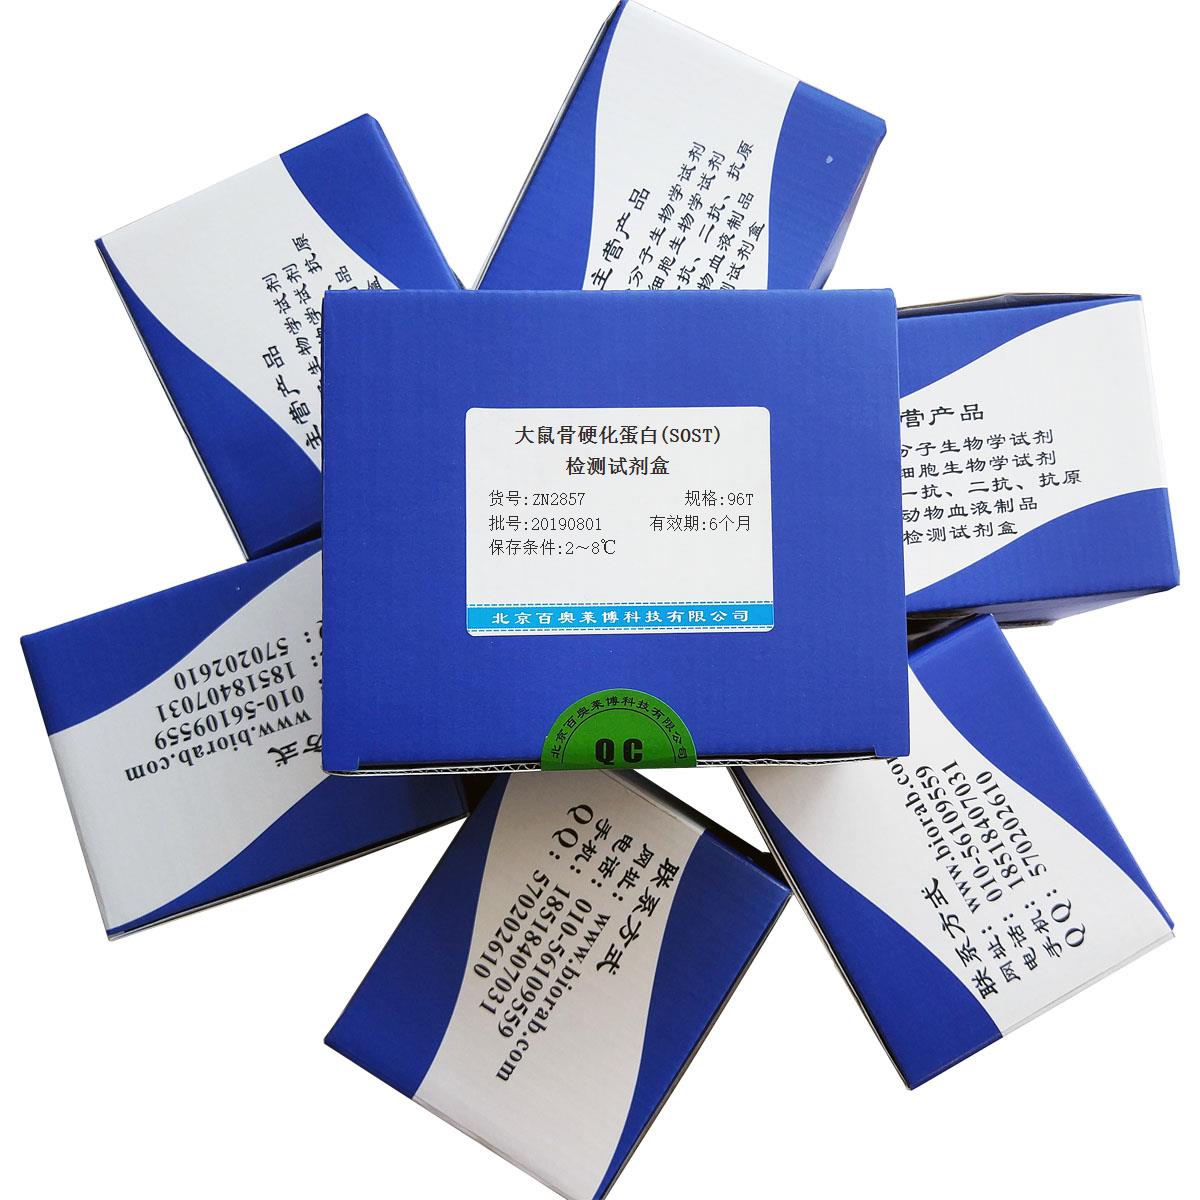 大鼠骨硬化蛋白(SOST)检测试剂盒北京供应商